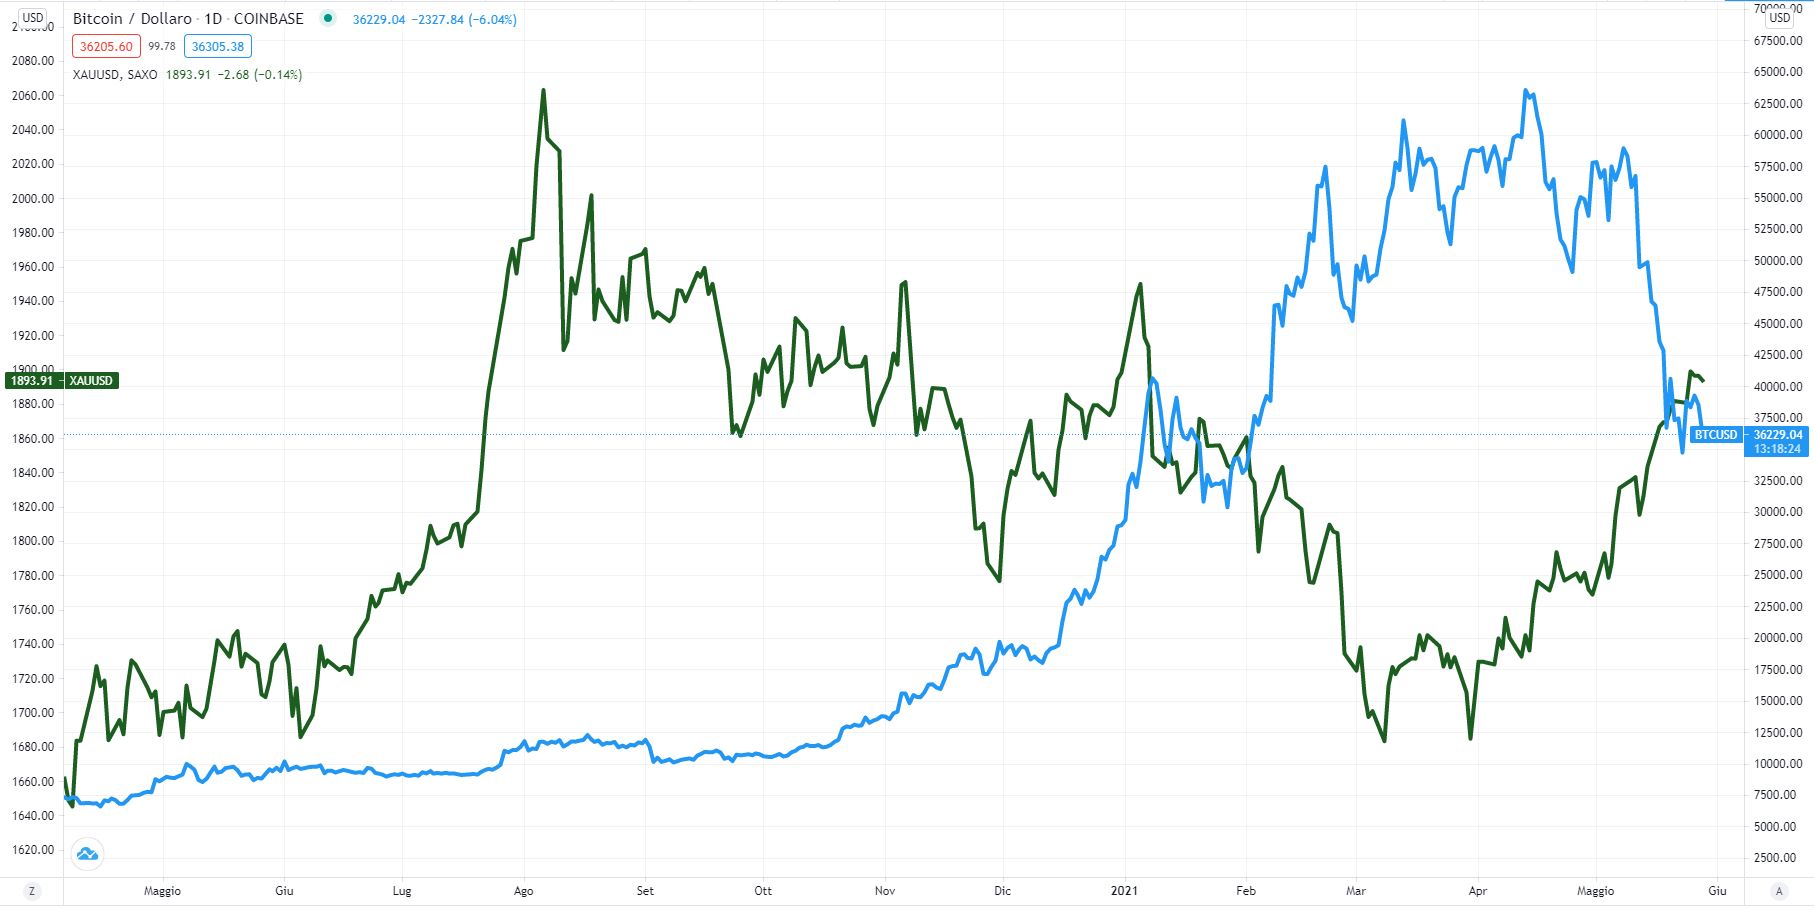 Prezzo oro ai massimi quadrimestrali dopo crollo del Bitcoin. Cosa dicono gli analisti